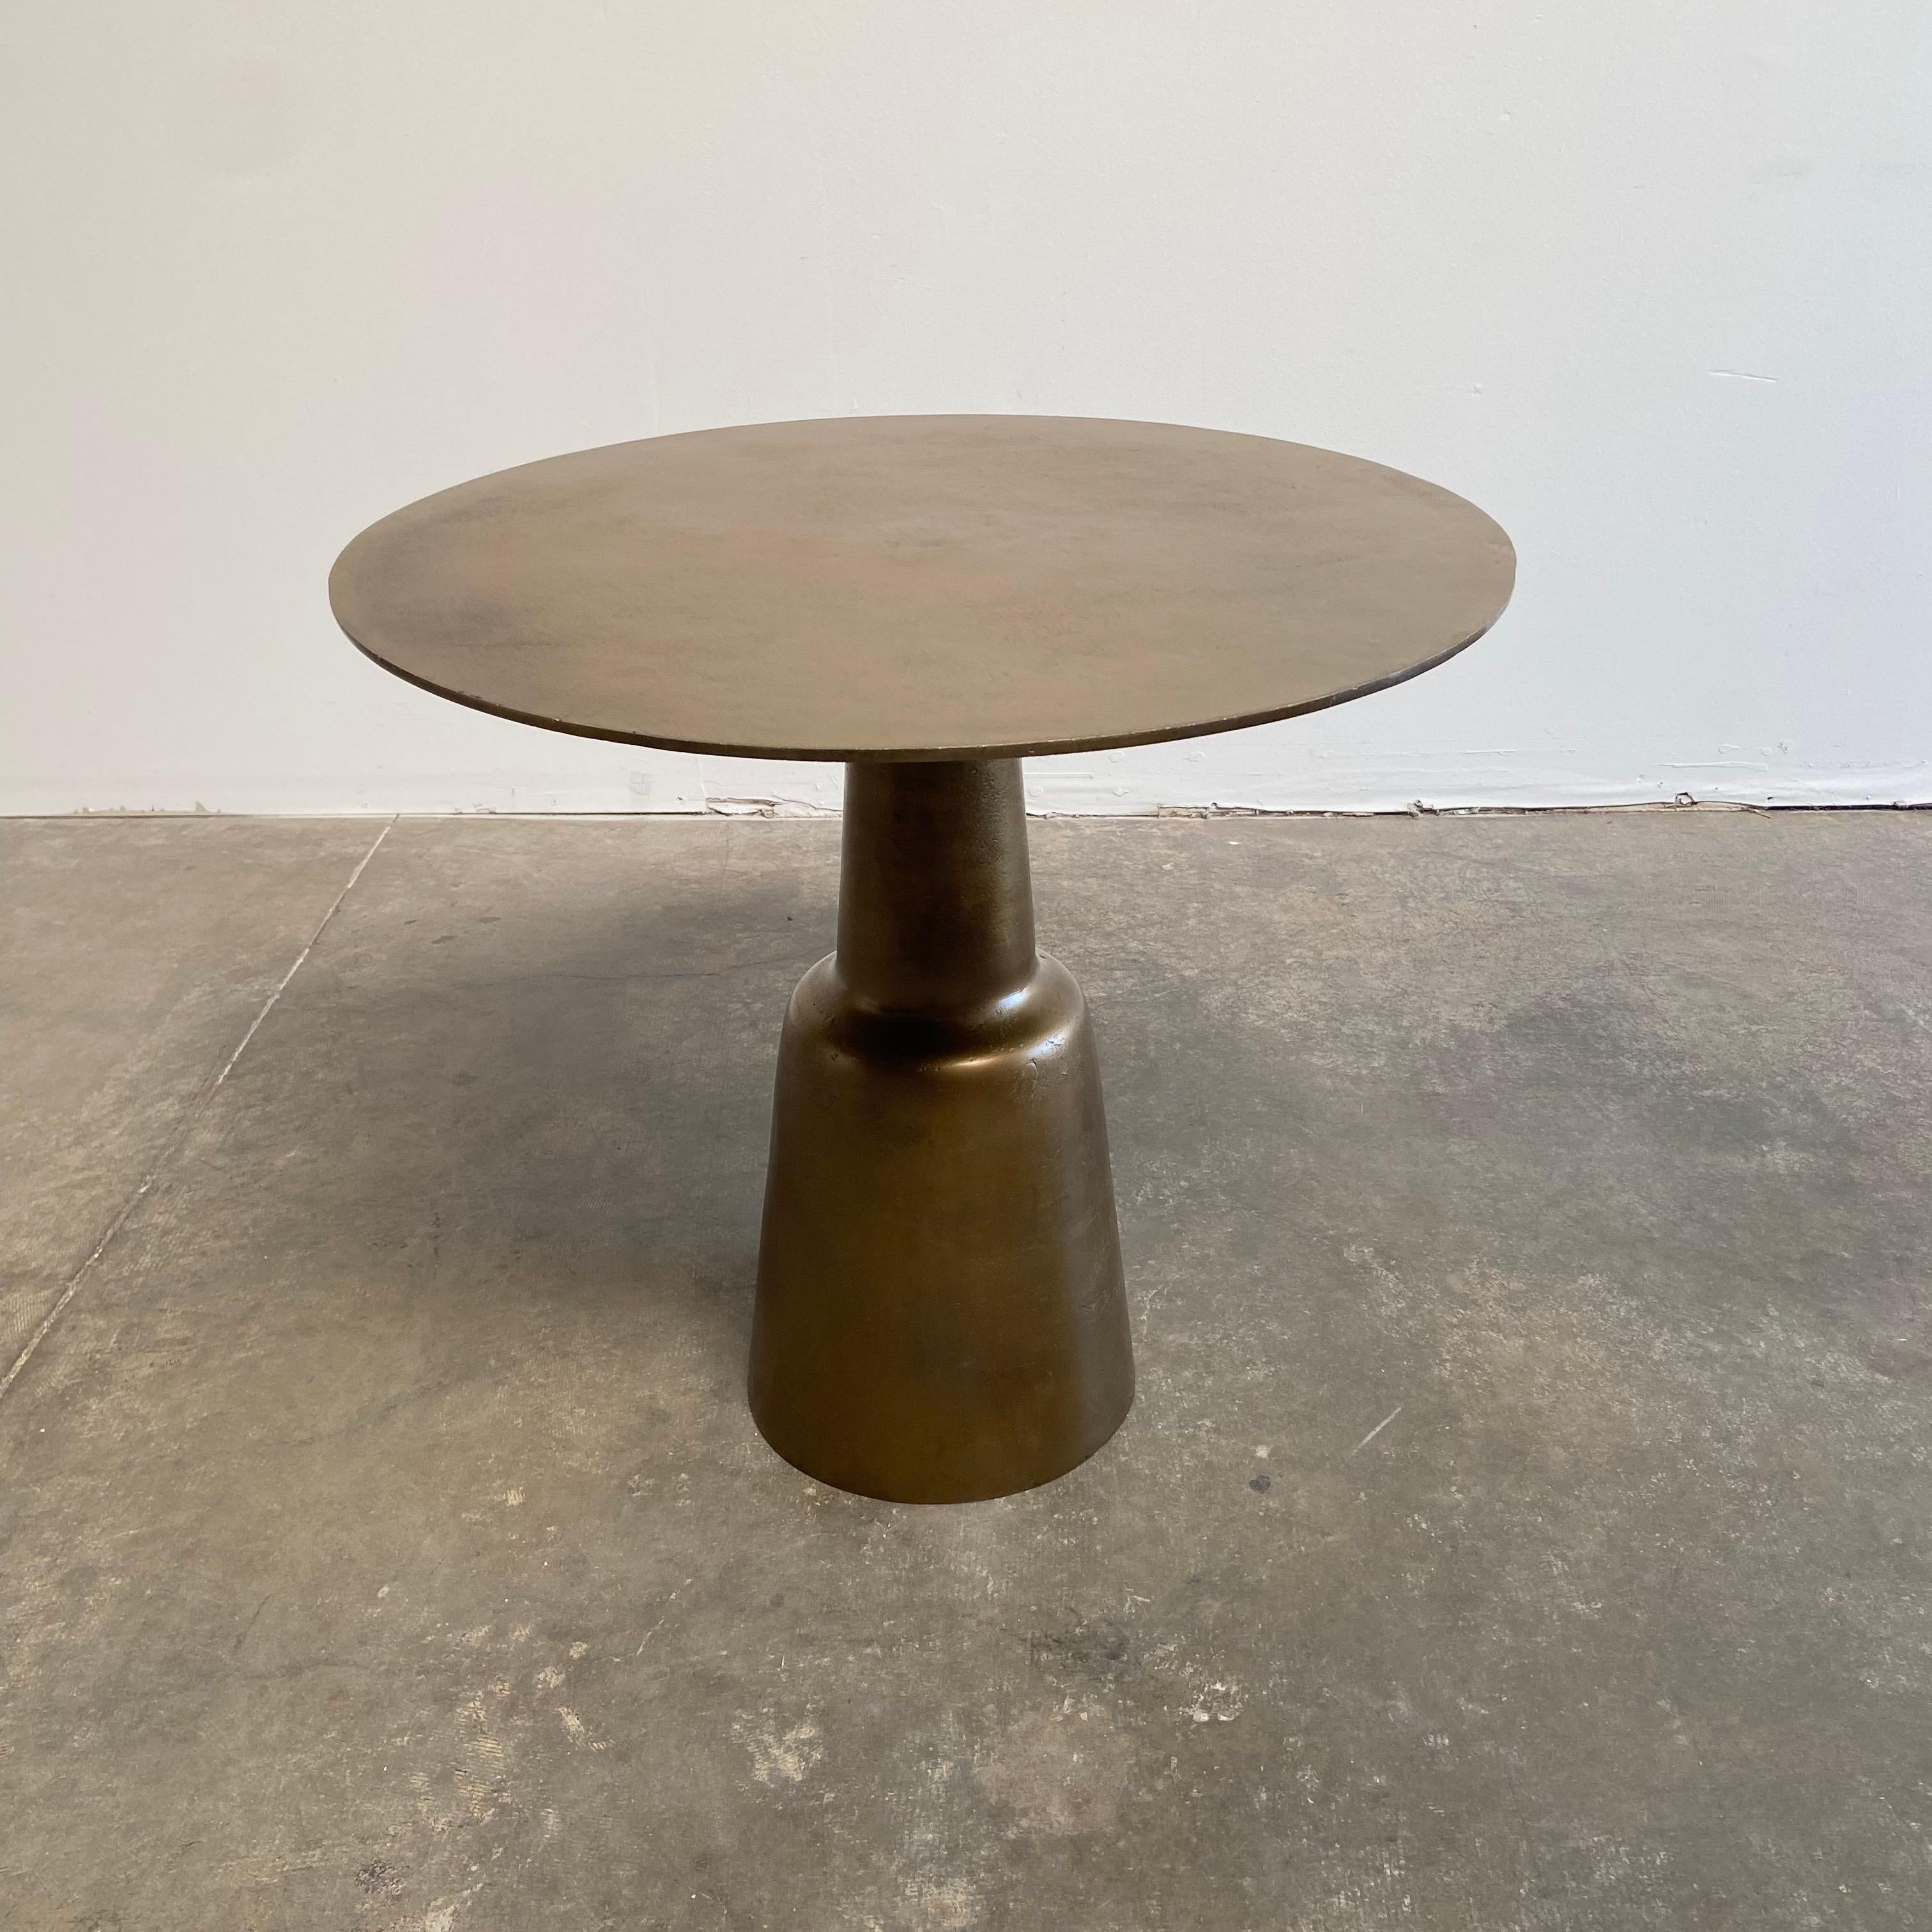 Dieser Tisch mit Patina-Messing-Finish eignet sich gut als Bistrotisch oder als Tisch im Eingangsbereich.
Die Platte hat eine wunderbare gealterte Patina, und die Oberfläche ist aus gealtertem Messing.
Größe: 31-1/2